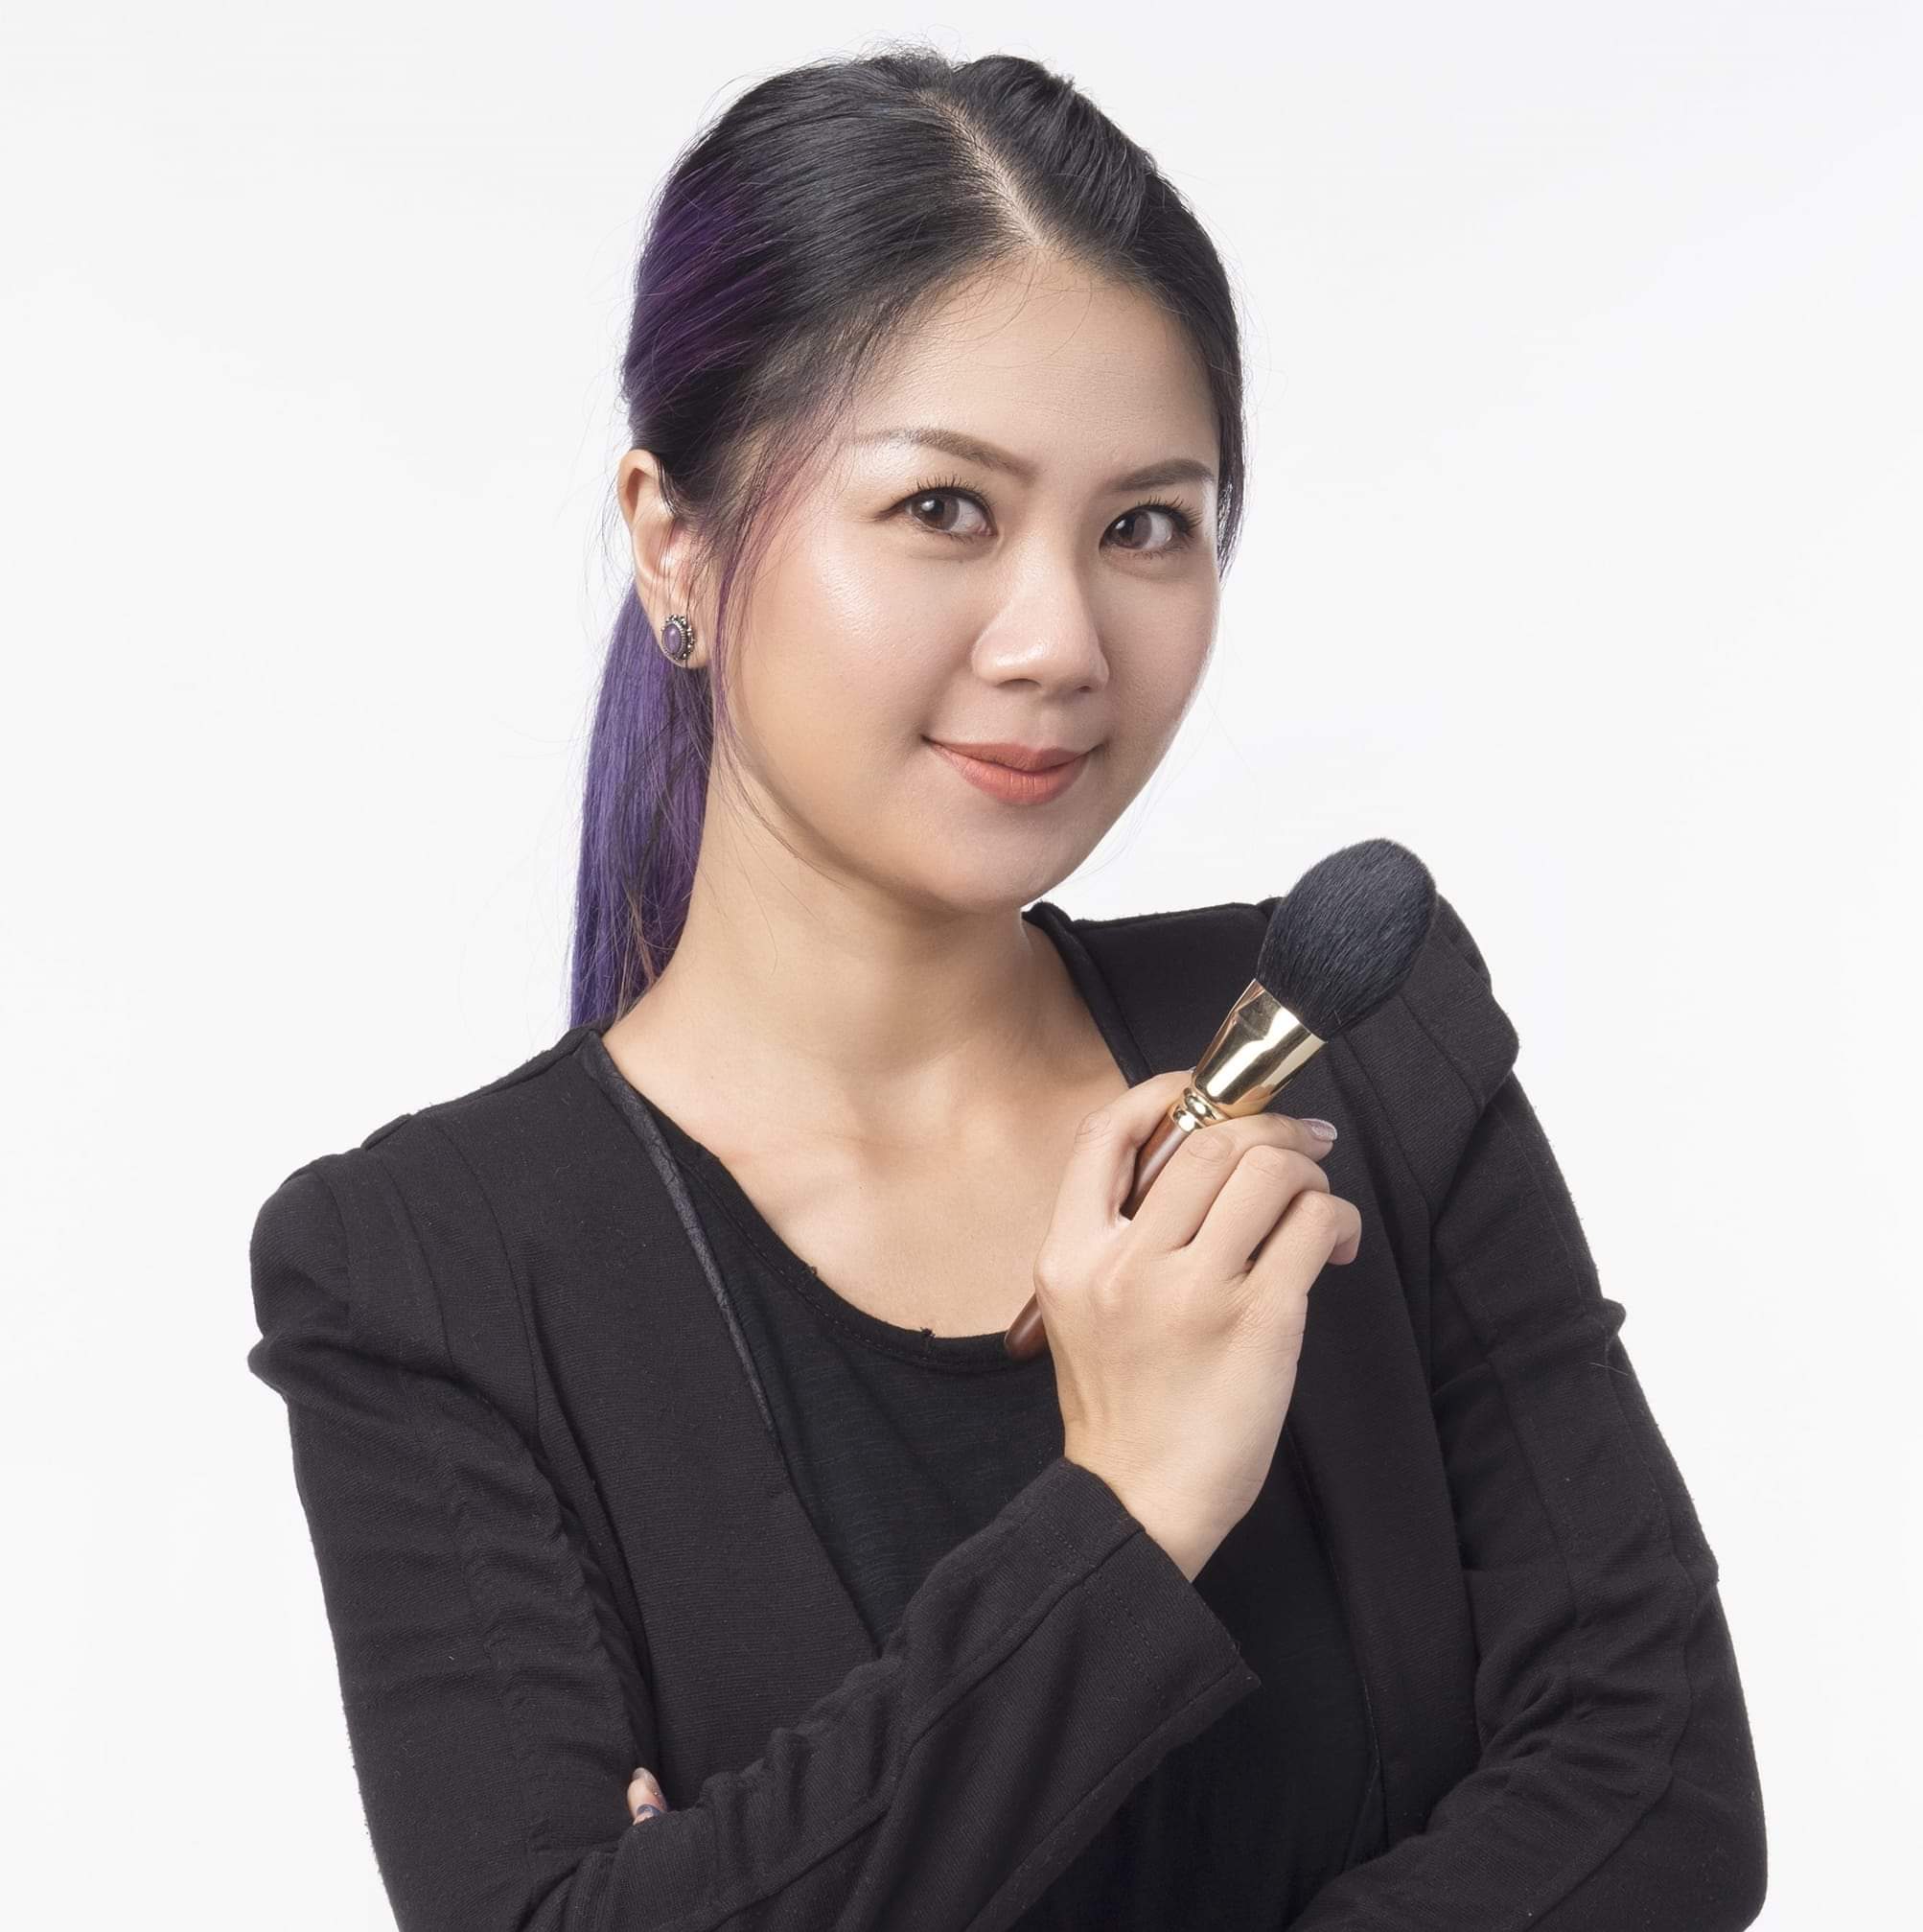 化妝師排行榜: Brenda Cheung 